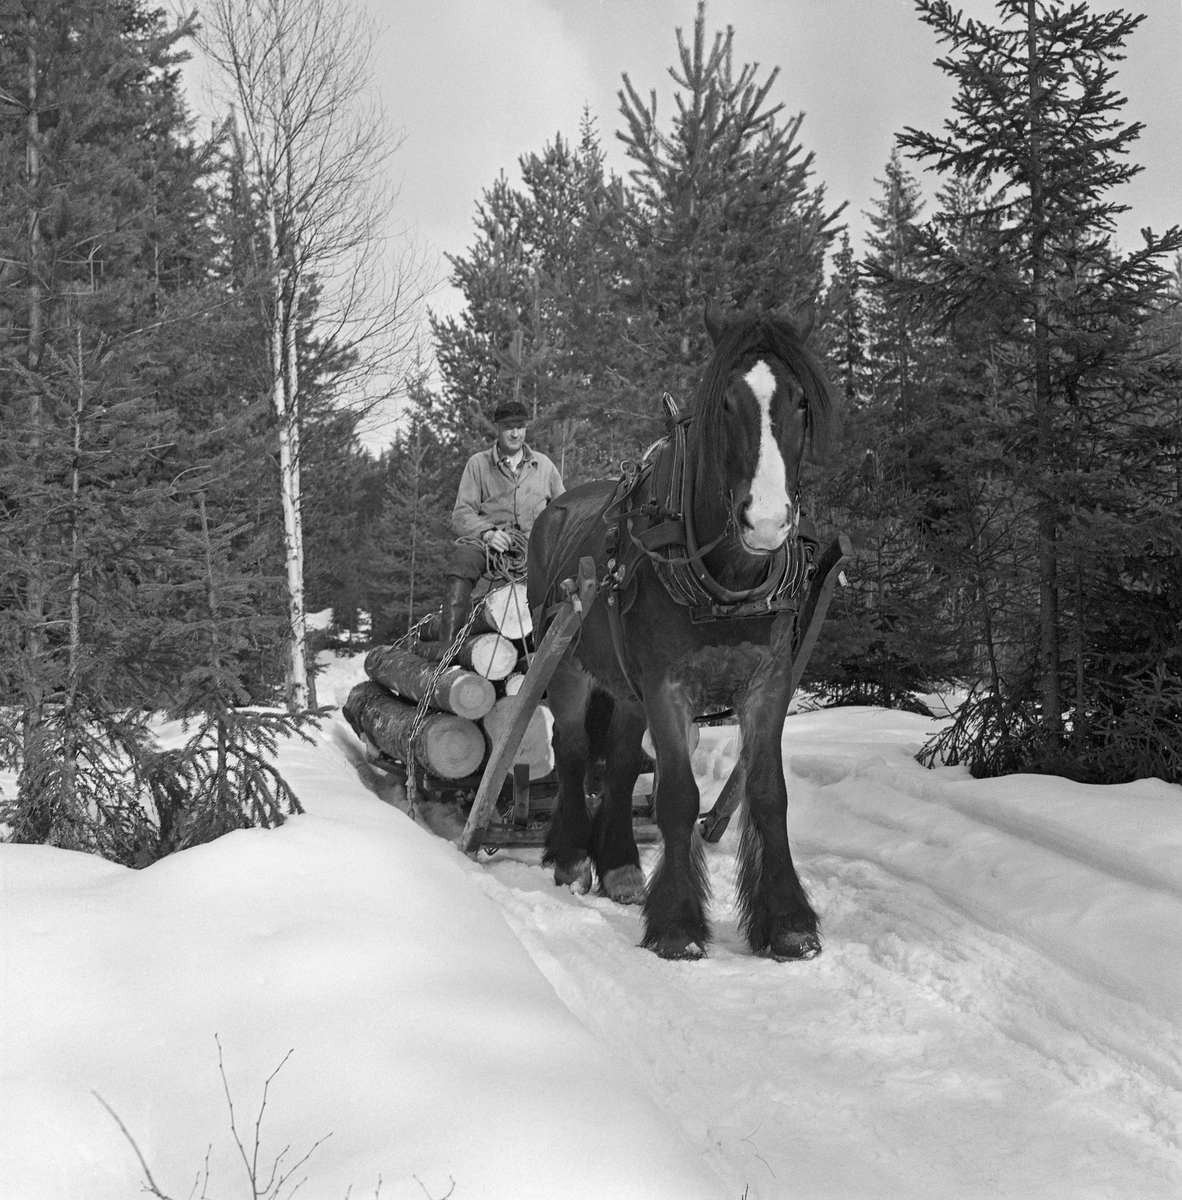 Jørgen Larsens arbeidshest «Blessen», fotografert på en tømmerveg i Stavåsen i Elverum i Hedmark. Larsen var tømmerkjører og bodde i Hernes. Fotografiet ble tatt vinteren 1971. Hesten hadde arbeidssele og var forspent en tømmerrustning (todelt slede). Det var seletøyet som gjorde det mulig å trekke, bremse og rygge med hesten.  Dette er en bogtresele med ei stoppet ringpute, som var tredd over hodet på hesten slik at den lå an mot nakken og bringen på trekkdyret. I bogtrærne var det fastsydd «drotter», kraftige draglær, som endte i trekkpunkter ved overgangen mellom hestens bog- og brystparti. Der var det en «orring» som var forankringspunkt for «bukgjorden» (reima under den fremre delen av hestebuken) og «oppholdsreimene», som var festet i ytterendene av «høvret», ei bøyle som var montert på tvers av hestens manke med avrundete treplater, «høvreballer», som anleggspunkter. På oversida av høvret var det ringer, som tømmene var ført gjennom. «Bakselen» - ei kraftig reim som var ført fra drotten rundt hestens bakpart (lårene og under halen), og som ble holdt oppe av ei «ryggreim» og ei «kryssreim» - gjorde det mulig for hesten å bremse lassene i utforbakker. «Draget» (skjækene) var festet i en jerntapp («oren») som var smidd sammen med orringen ved hjelp av en selepinne. Selereimene skulle justeres slik at det gikk ei noenlunde rett linje fra drotten gjennom skjækene til trekkpunktene fremst på den doningen hesten skulle trekke - her festepunktet for bøyla på skjækene.